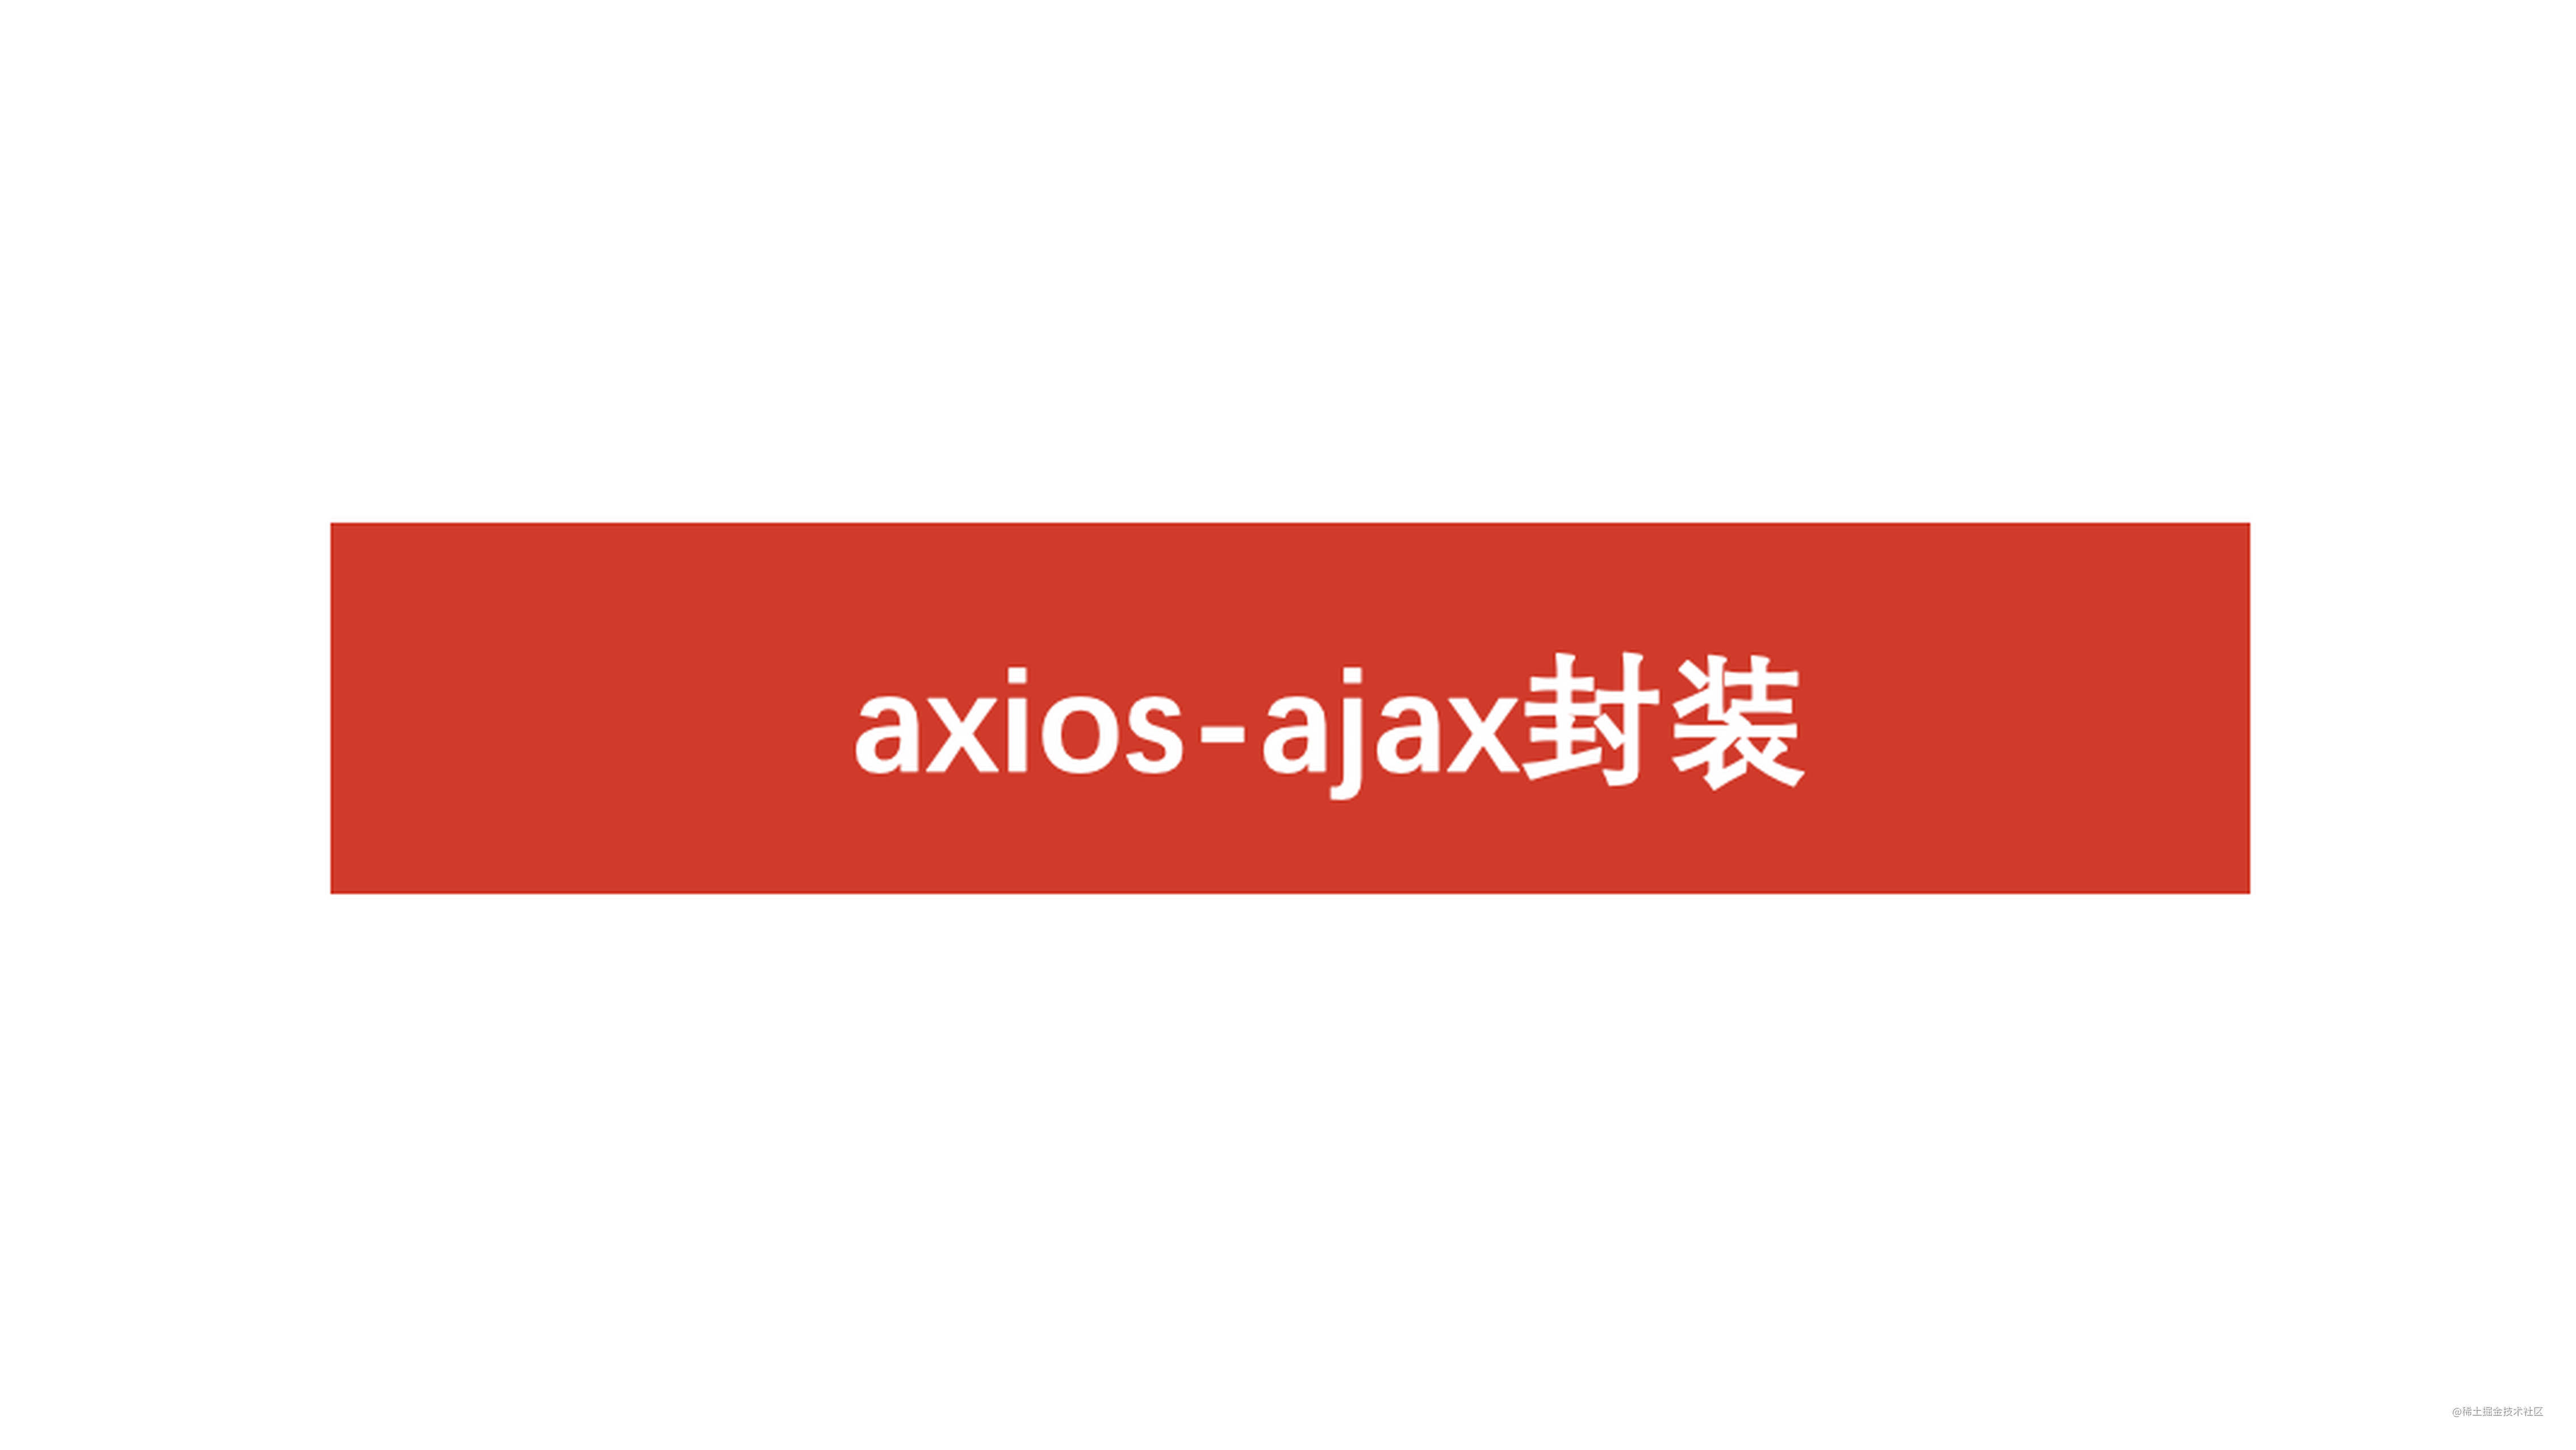 面试官：Vue/React项目中有封装过axios吗？怎么封装的？